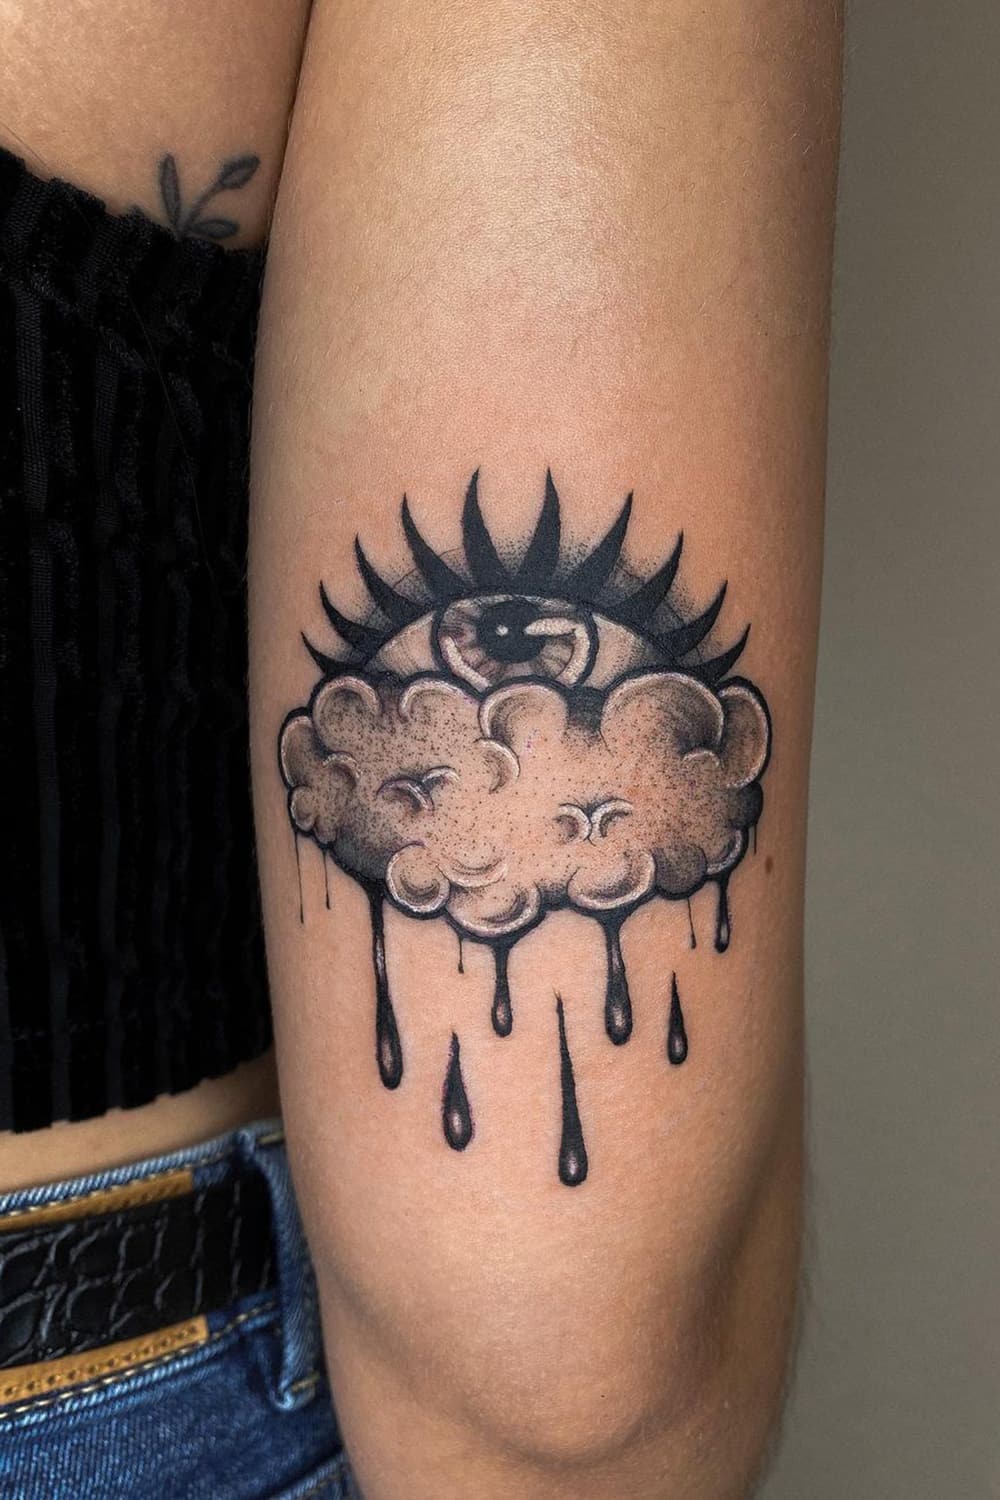 Cloud Eye Tattoo